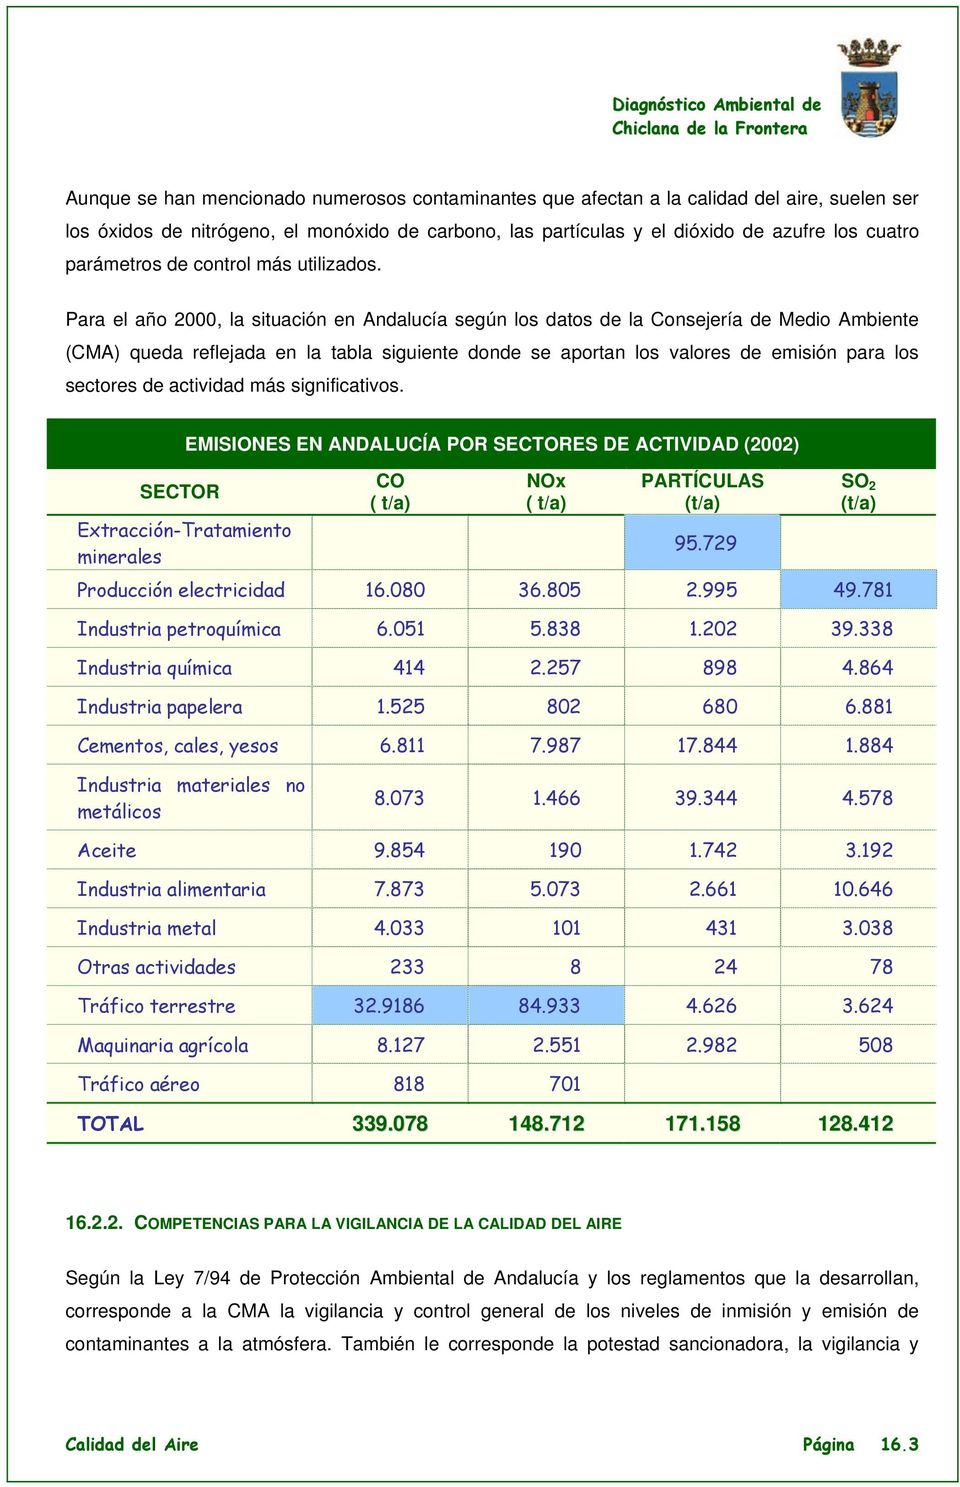 Para el año 2000, la situación en Andalucía según los datos de la Consejería de Medio Ambiente (CMA) queda reflejada en la tabla siguiente donde se aportan los valores de emisión para los sectores de